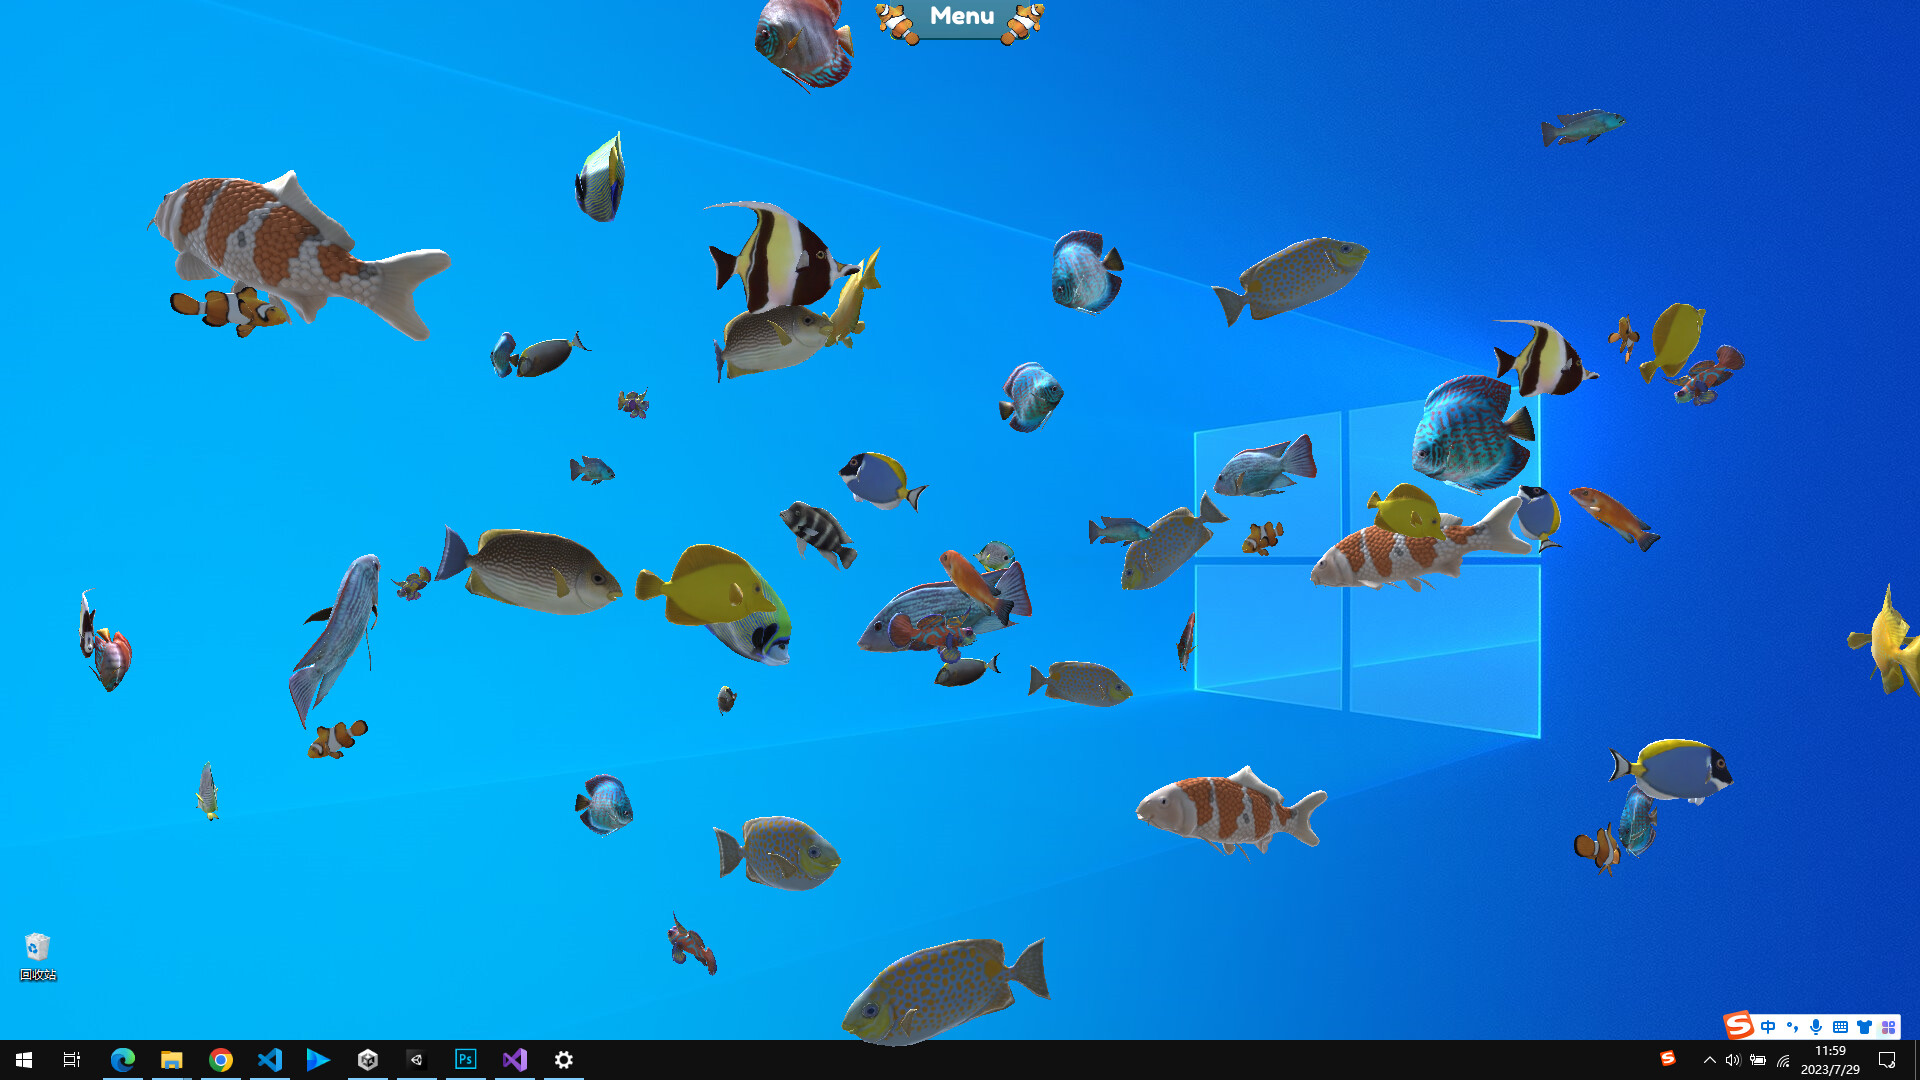 桌面養魚摸魚利器《Fish on the desktop》STEAM頁上線